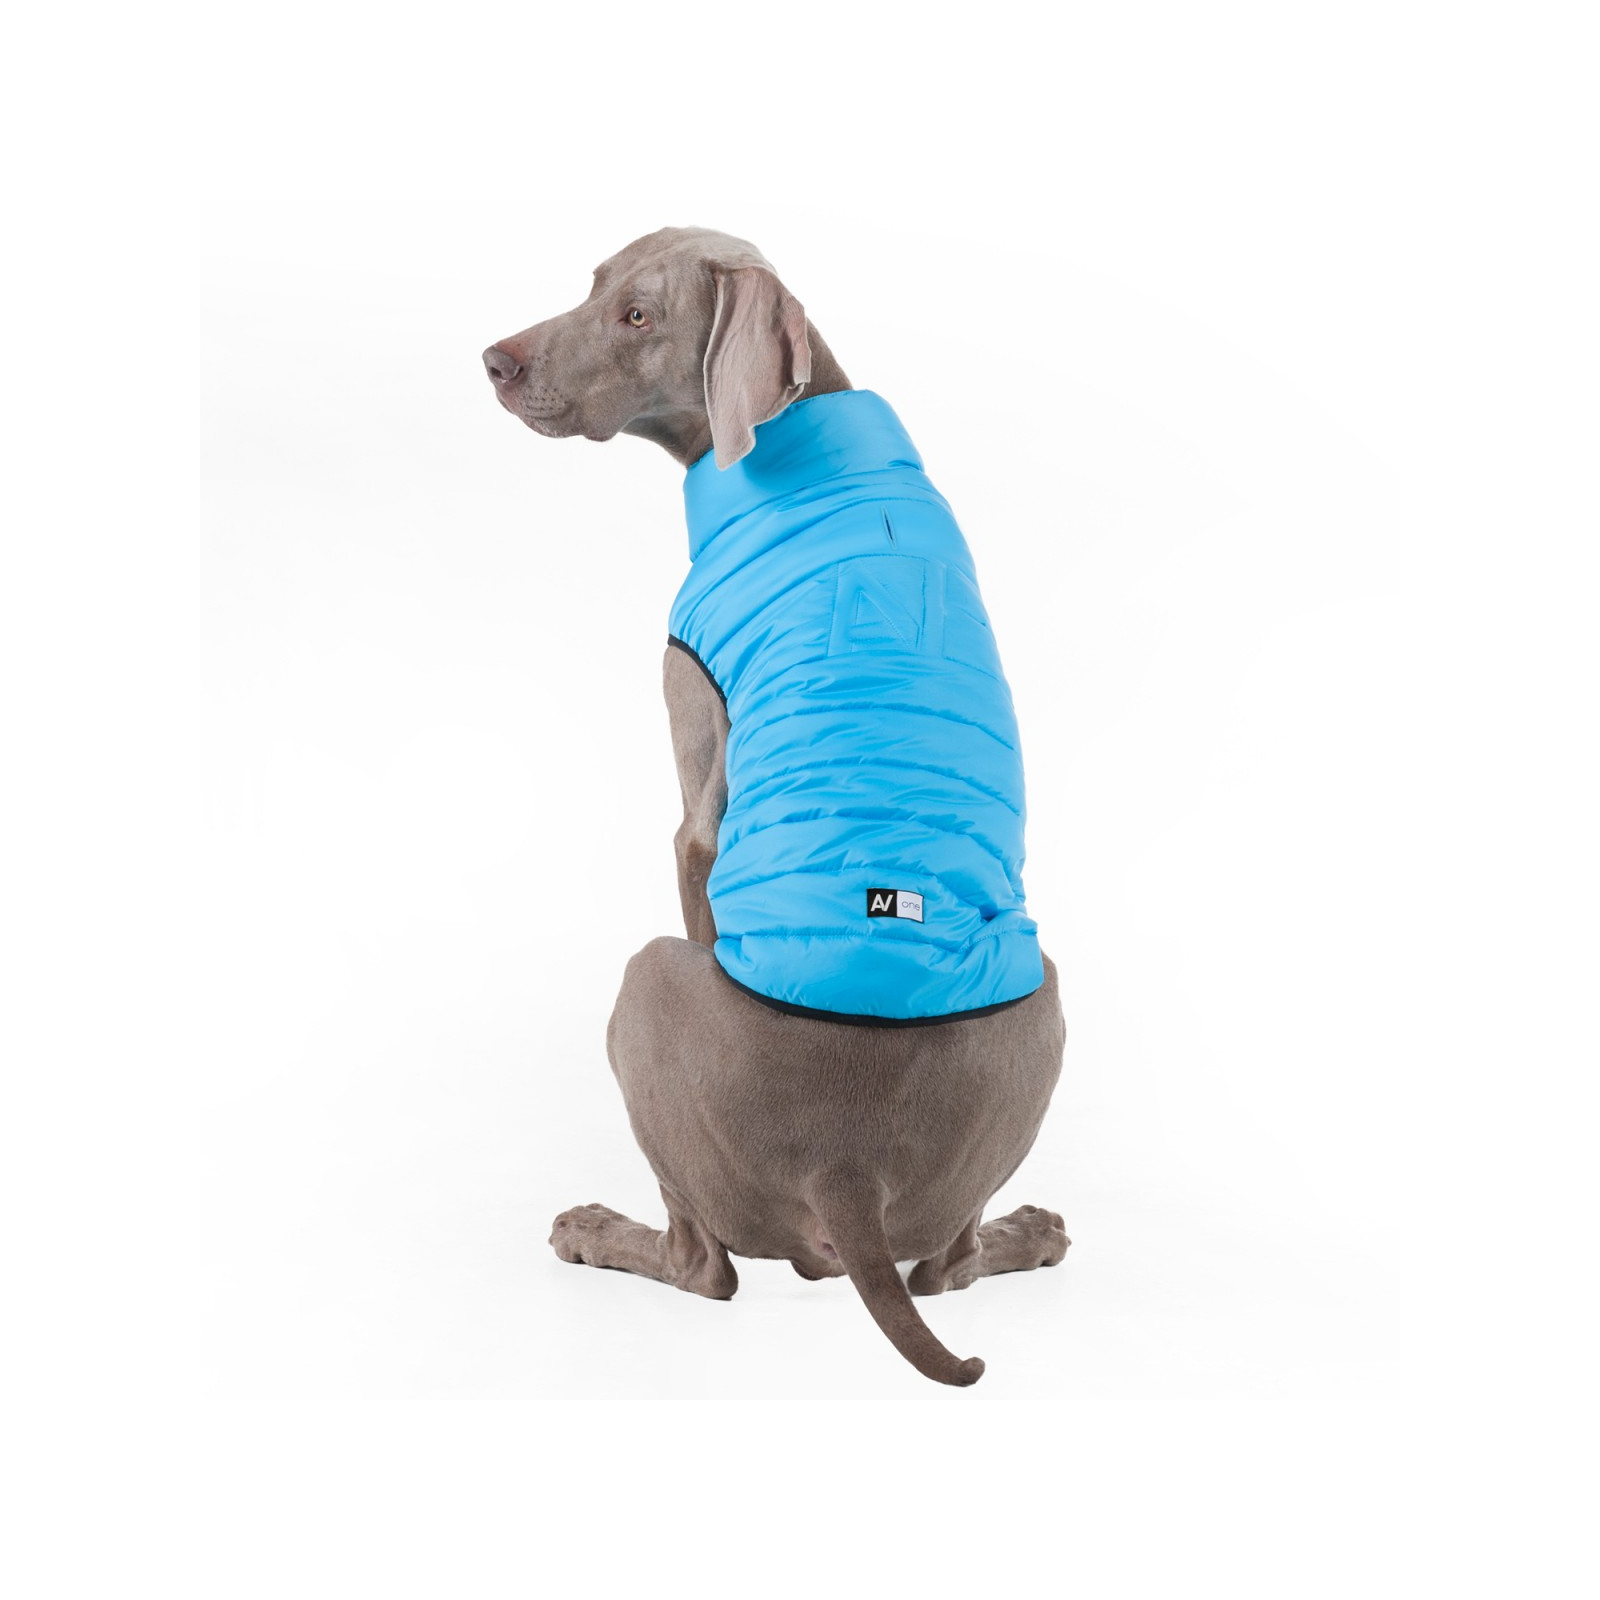 Курточка для животных Airy Vest One M 50 голубая (20732) изображение 6